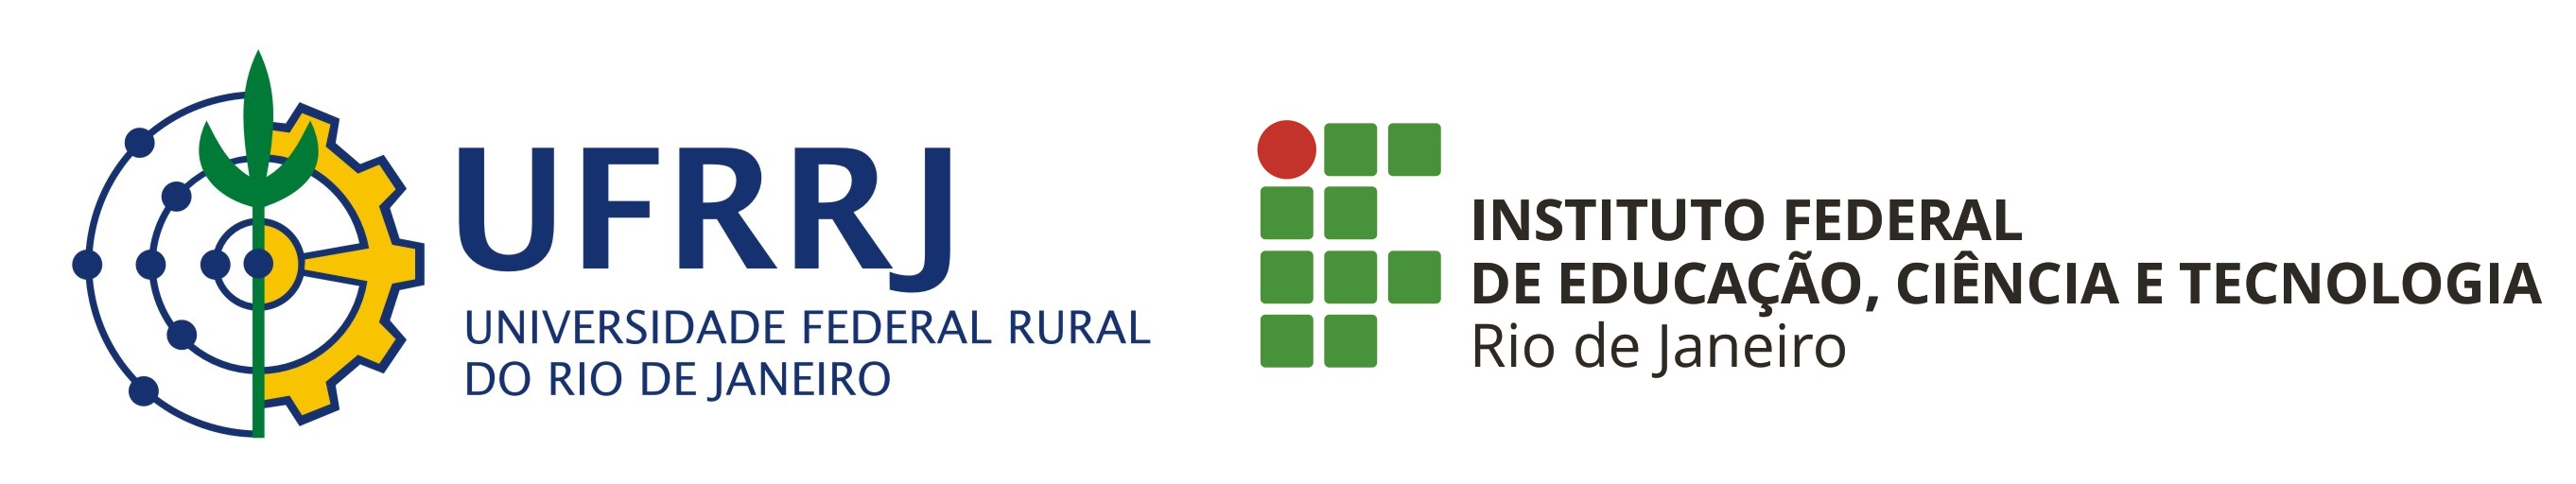 Logotipo da Universidade Federal Rural do Rio de Janeiro e do IFRJ